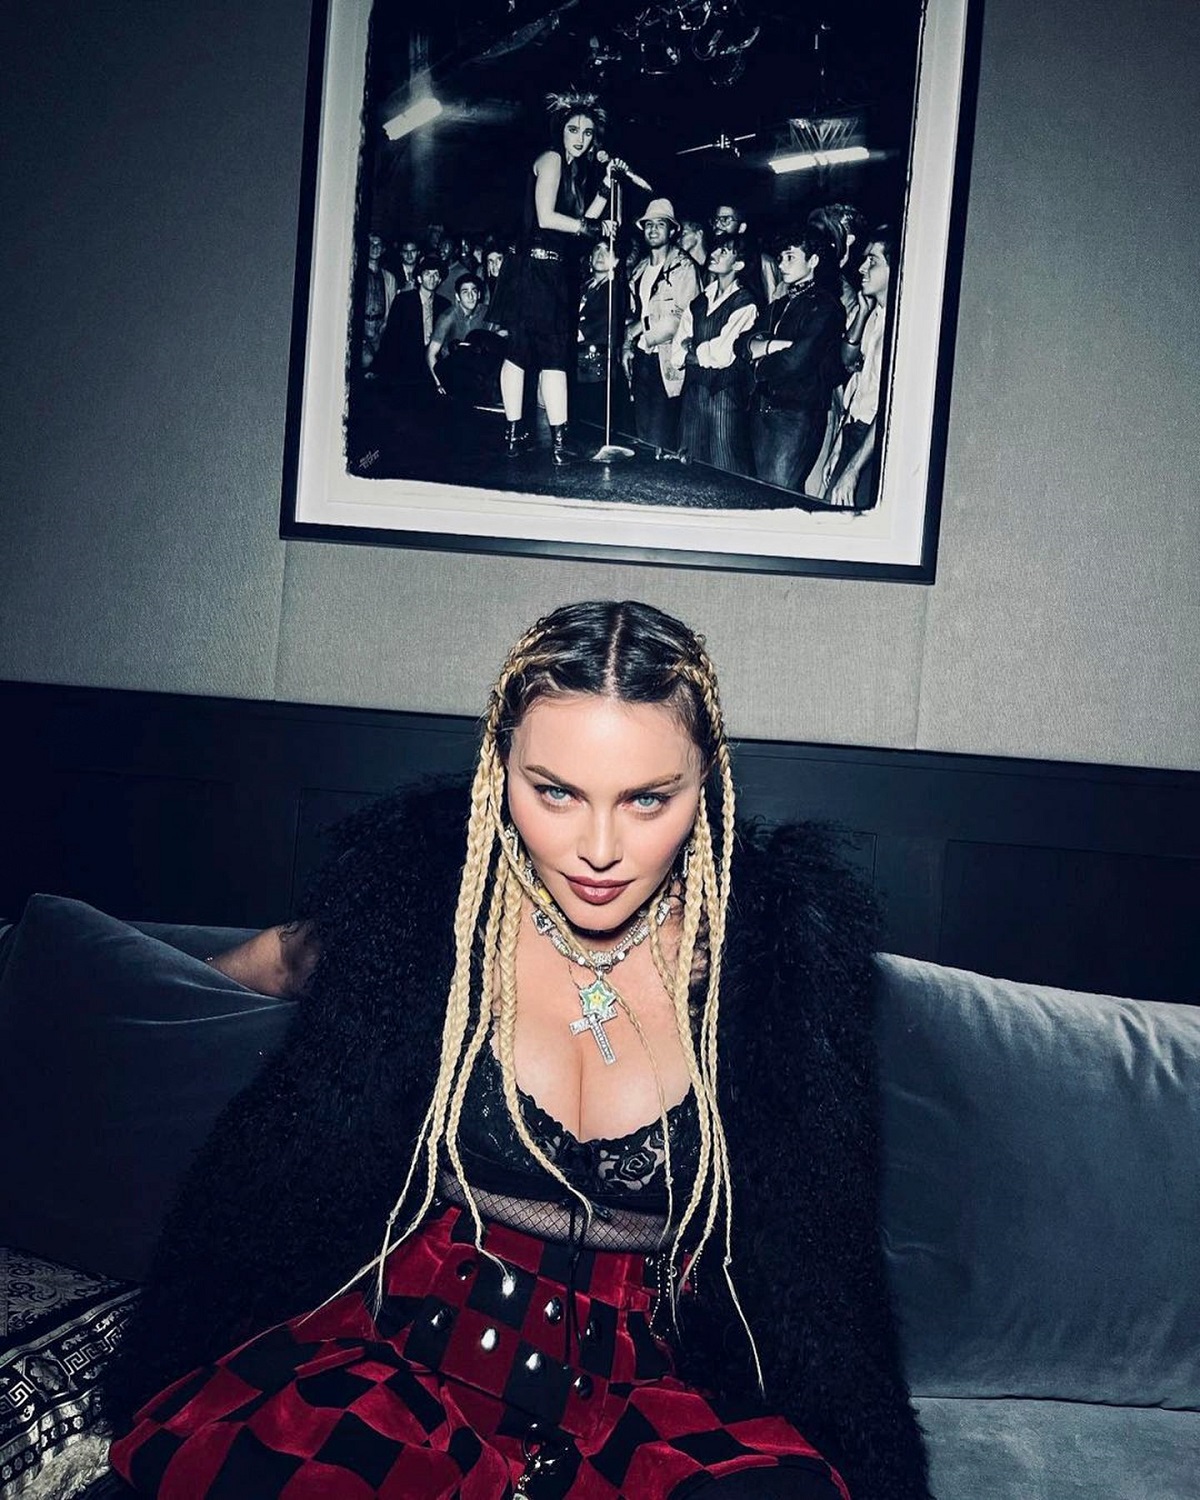 Madonna a purtat o fustă scurtă roție în carouri și s-a pozat pe o canapea gri